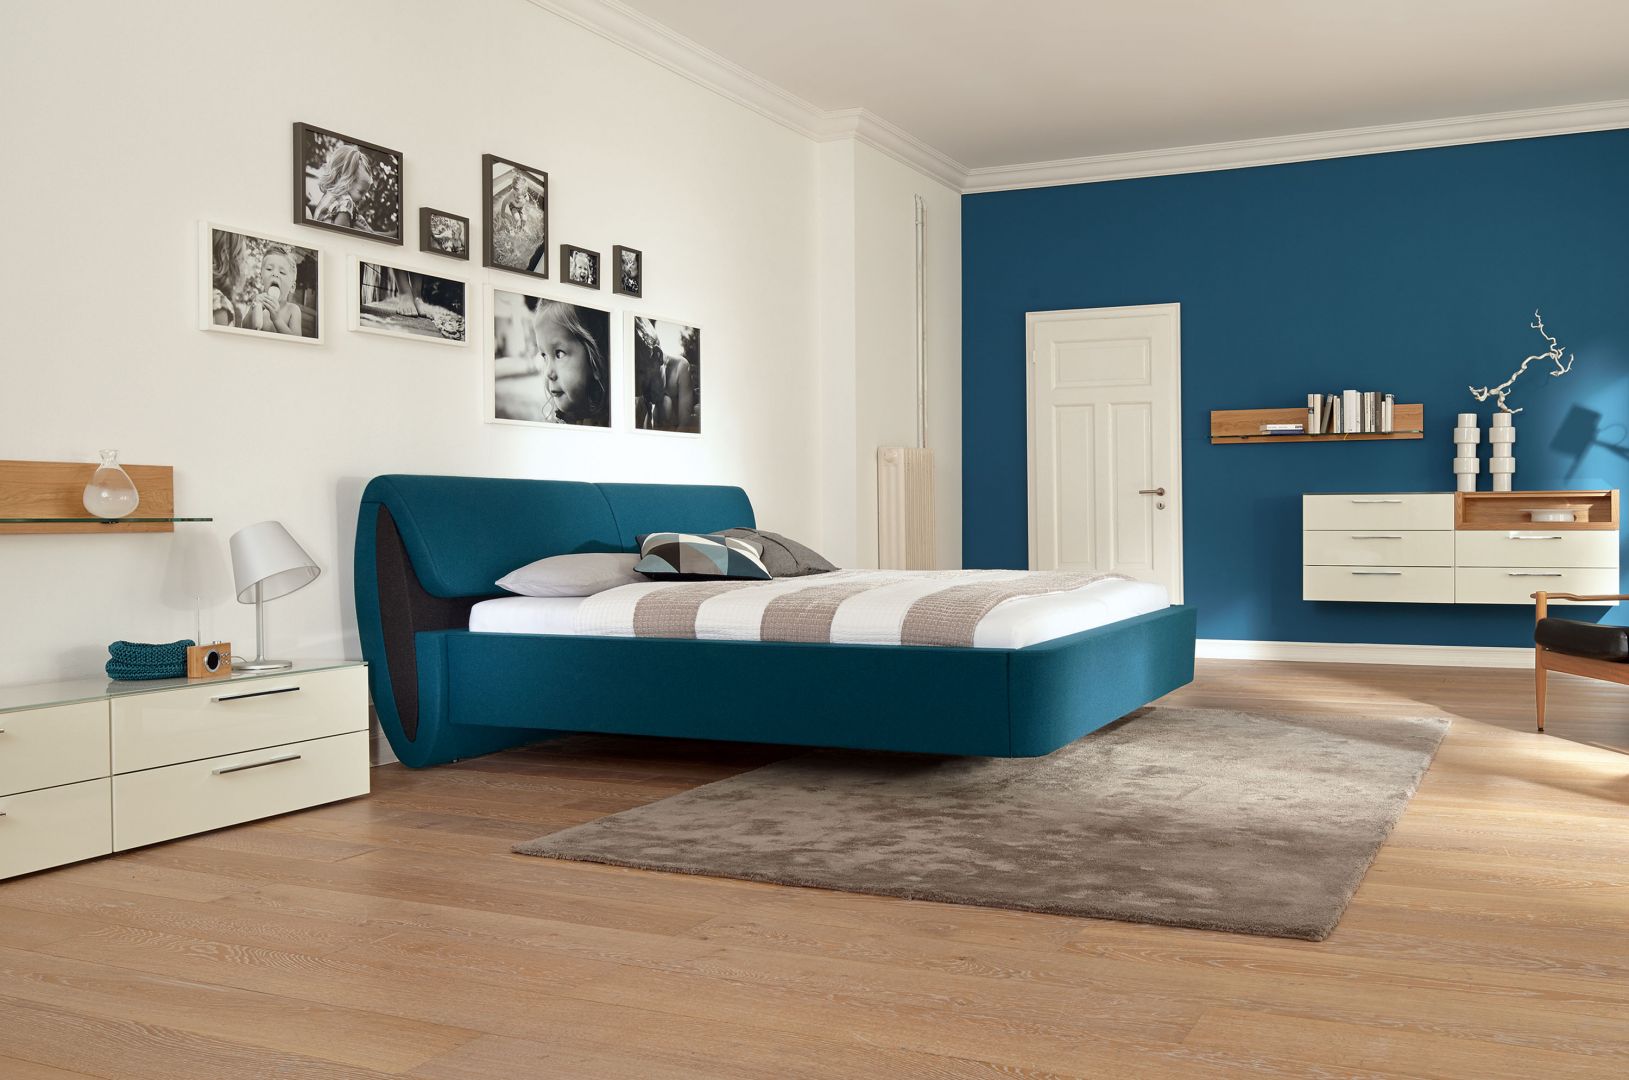 Łóżko to absolutny fundament sypialni. Jeśli chcesz, aby wnętrze było wyjątkowe, wybierz nietypowy model łóżka. Np. to łóżko wygląda, jakby lewitowało nad podłogą. Fot. Huelsta 